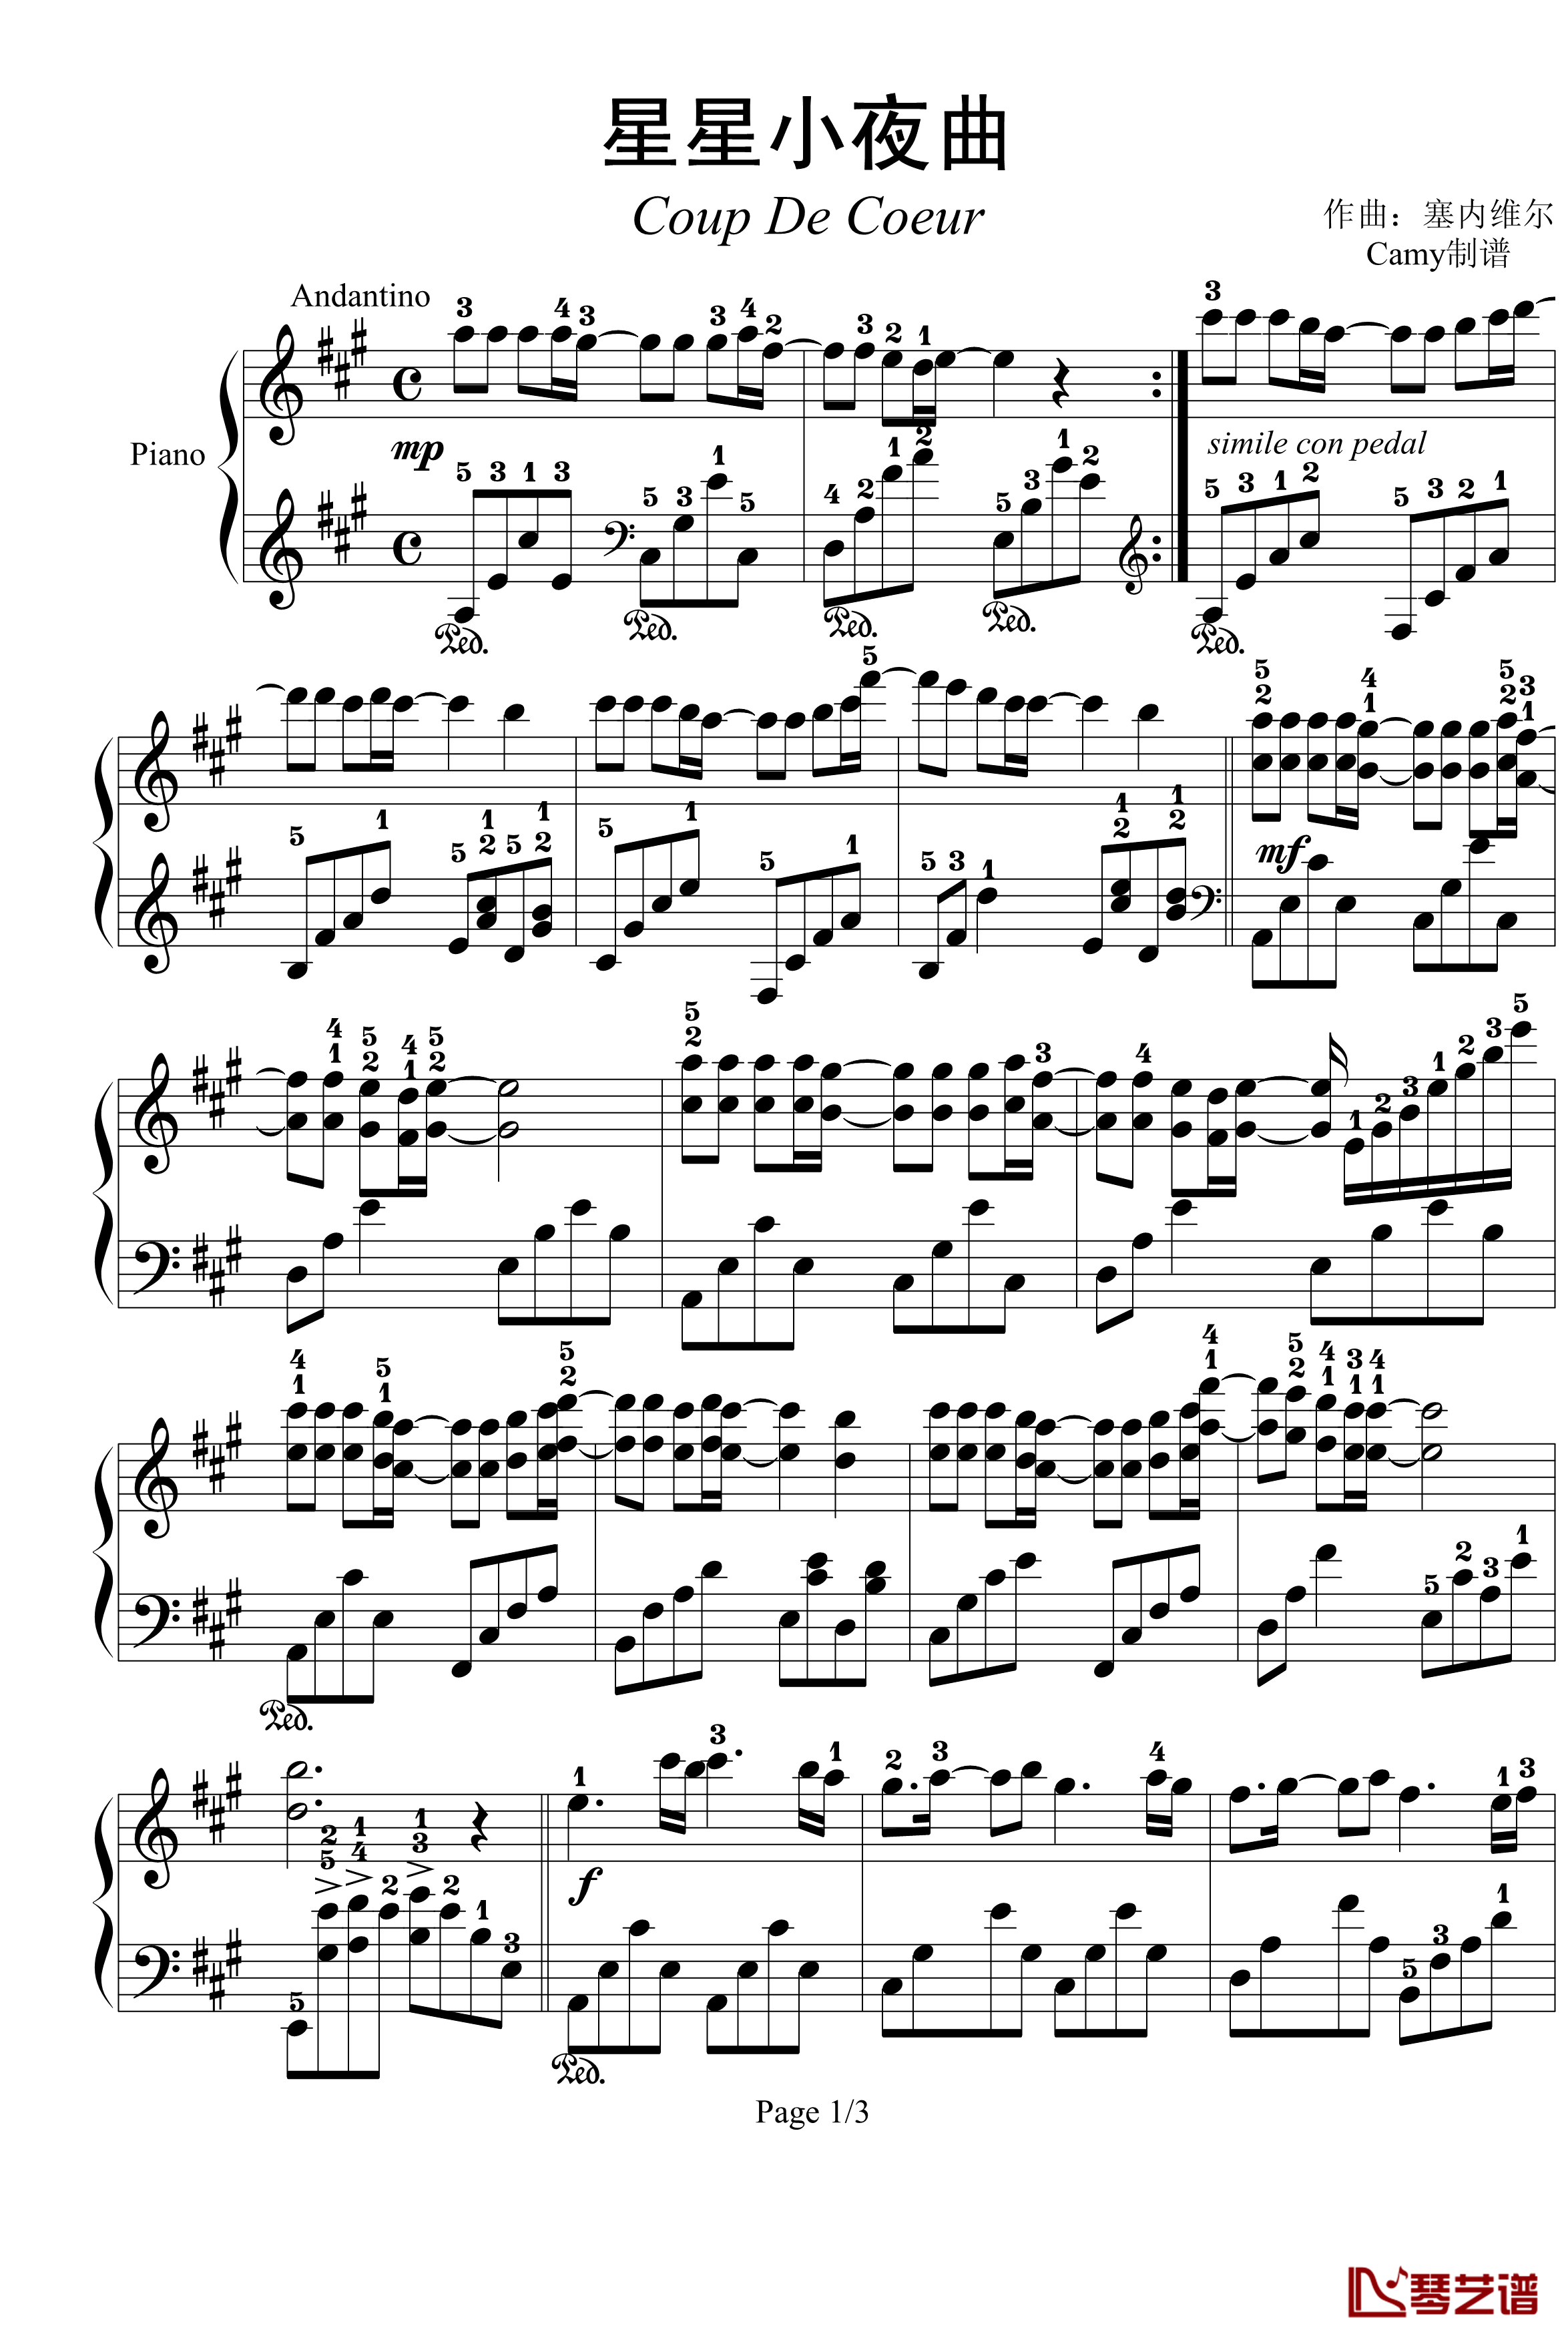 星星小夜曲钢琴谱-带指法-已删除-塞内维尔1